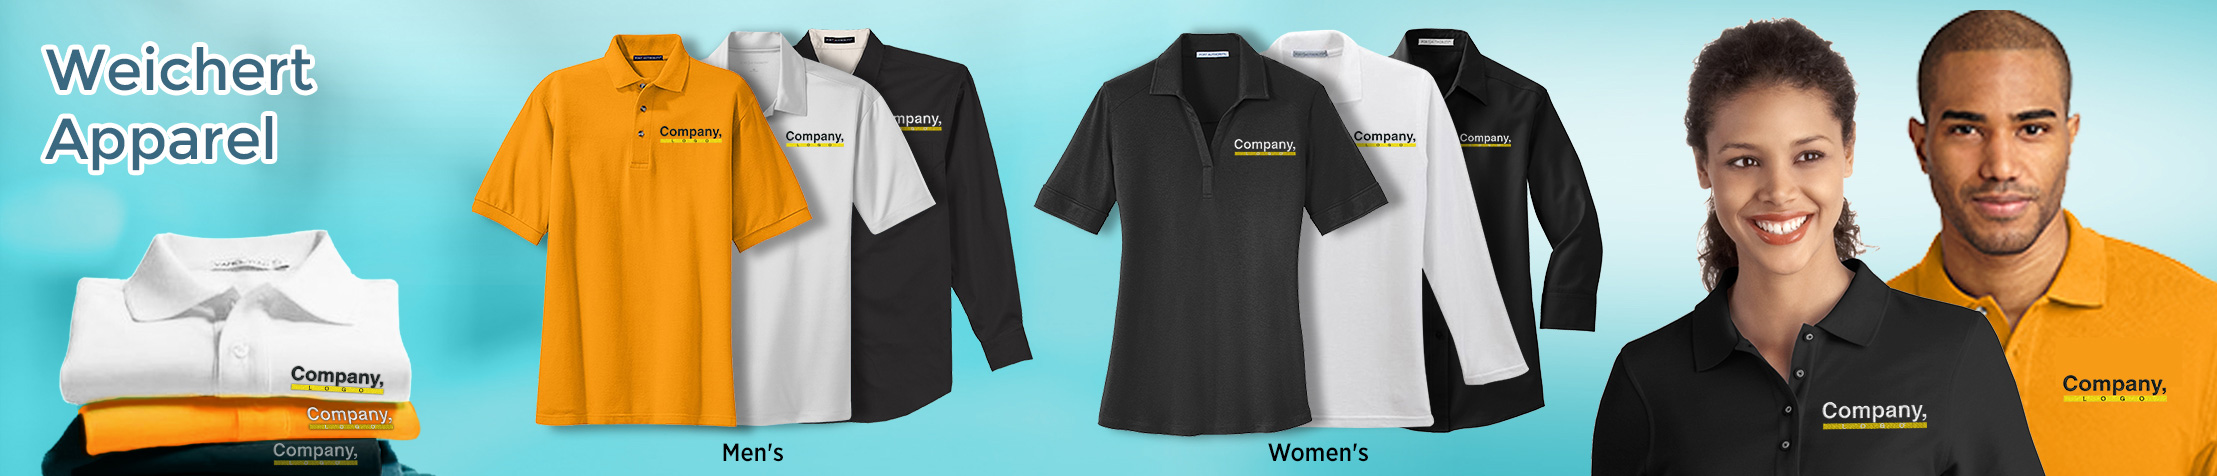 Weichert Real Estate Apparel - logo apparel | Men's & Women's shirts | BestPrintBuy.com